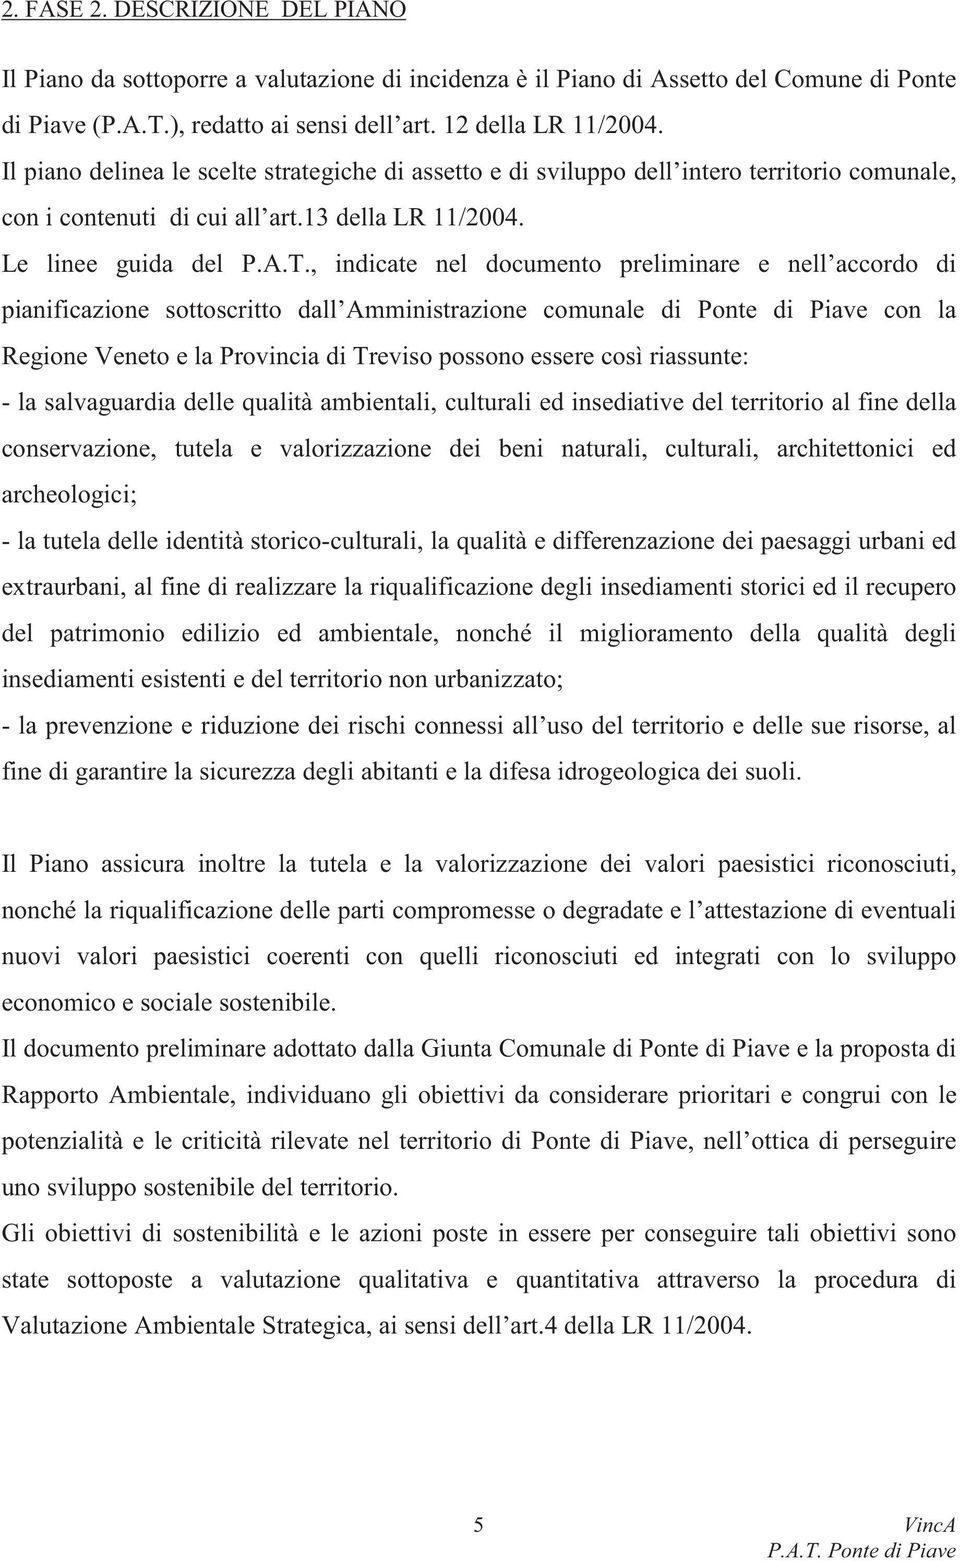 , indicate nel documento preliminare e nell accordo di pianificazione sottoscritto dall Amministrazione comunale di Ponte di Piave con la Regione Veneto e la Provincia di Treviso possono essere così